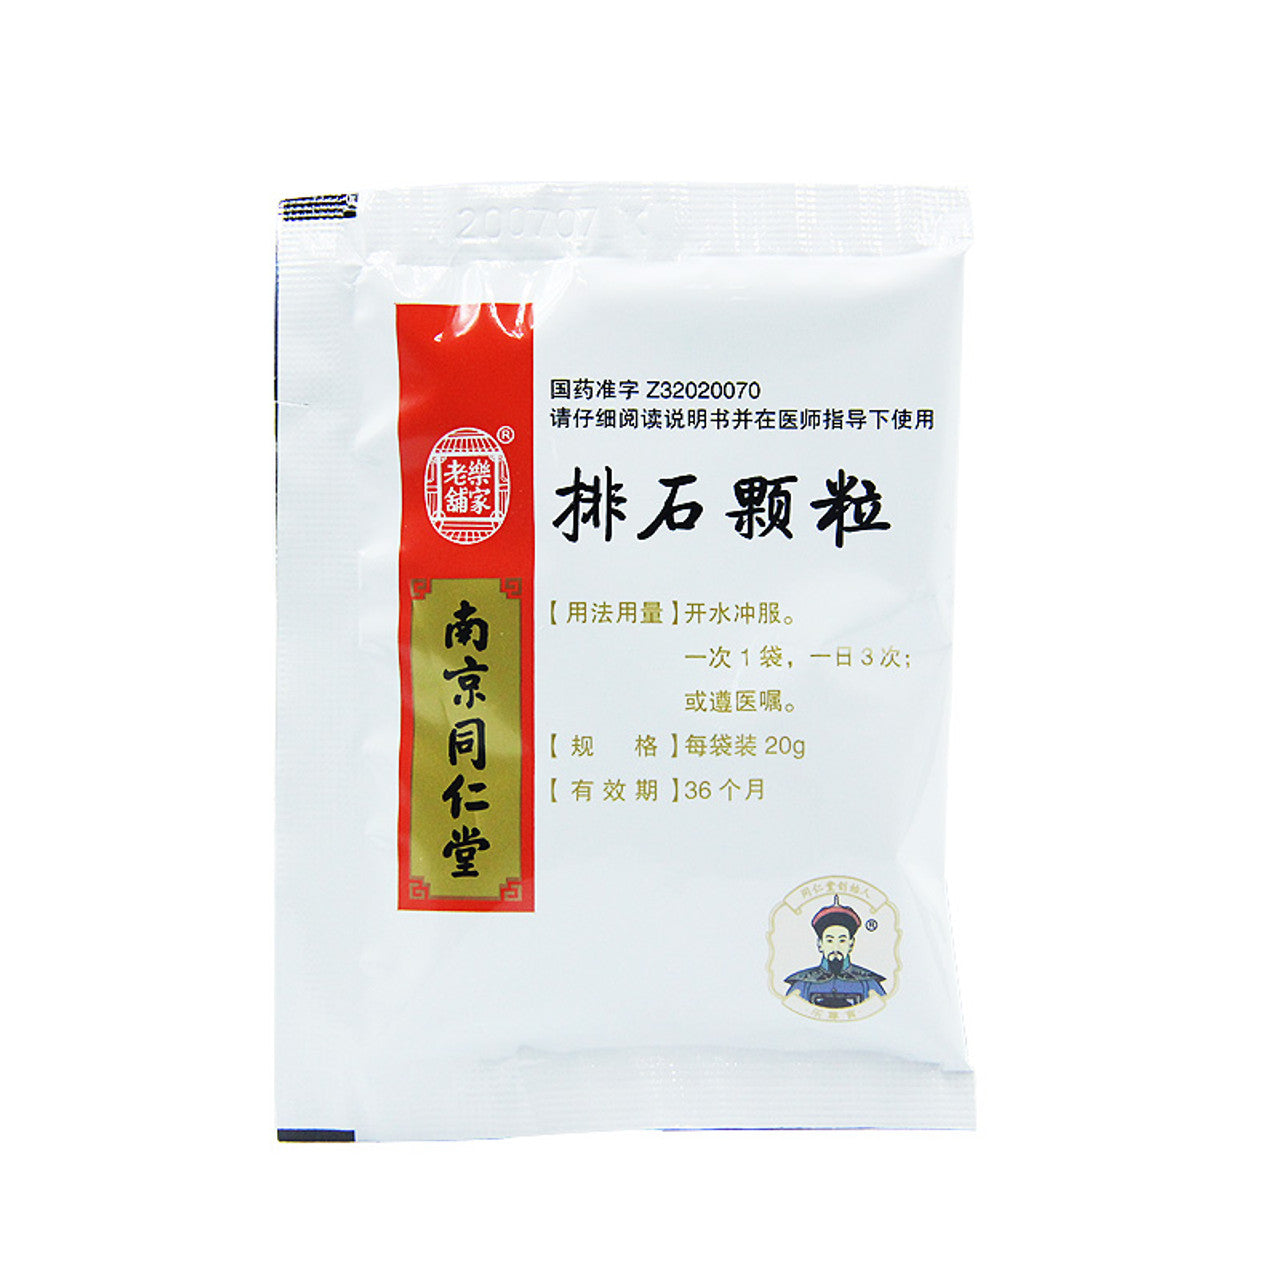 Chinese Herbs. Brand Le Jia Lao Pu. Paishi Keli or Paishi Granules or Pai Shi Ke Li or Pai Shi Granules or PaishiKelifor Urinary Stones